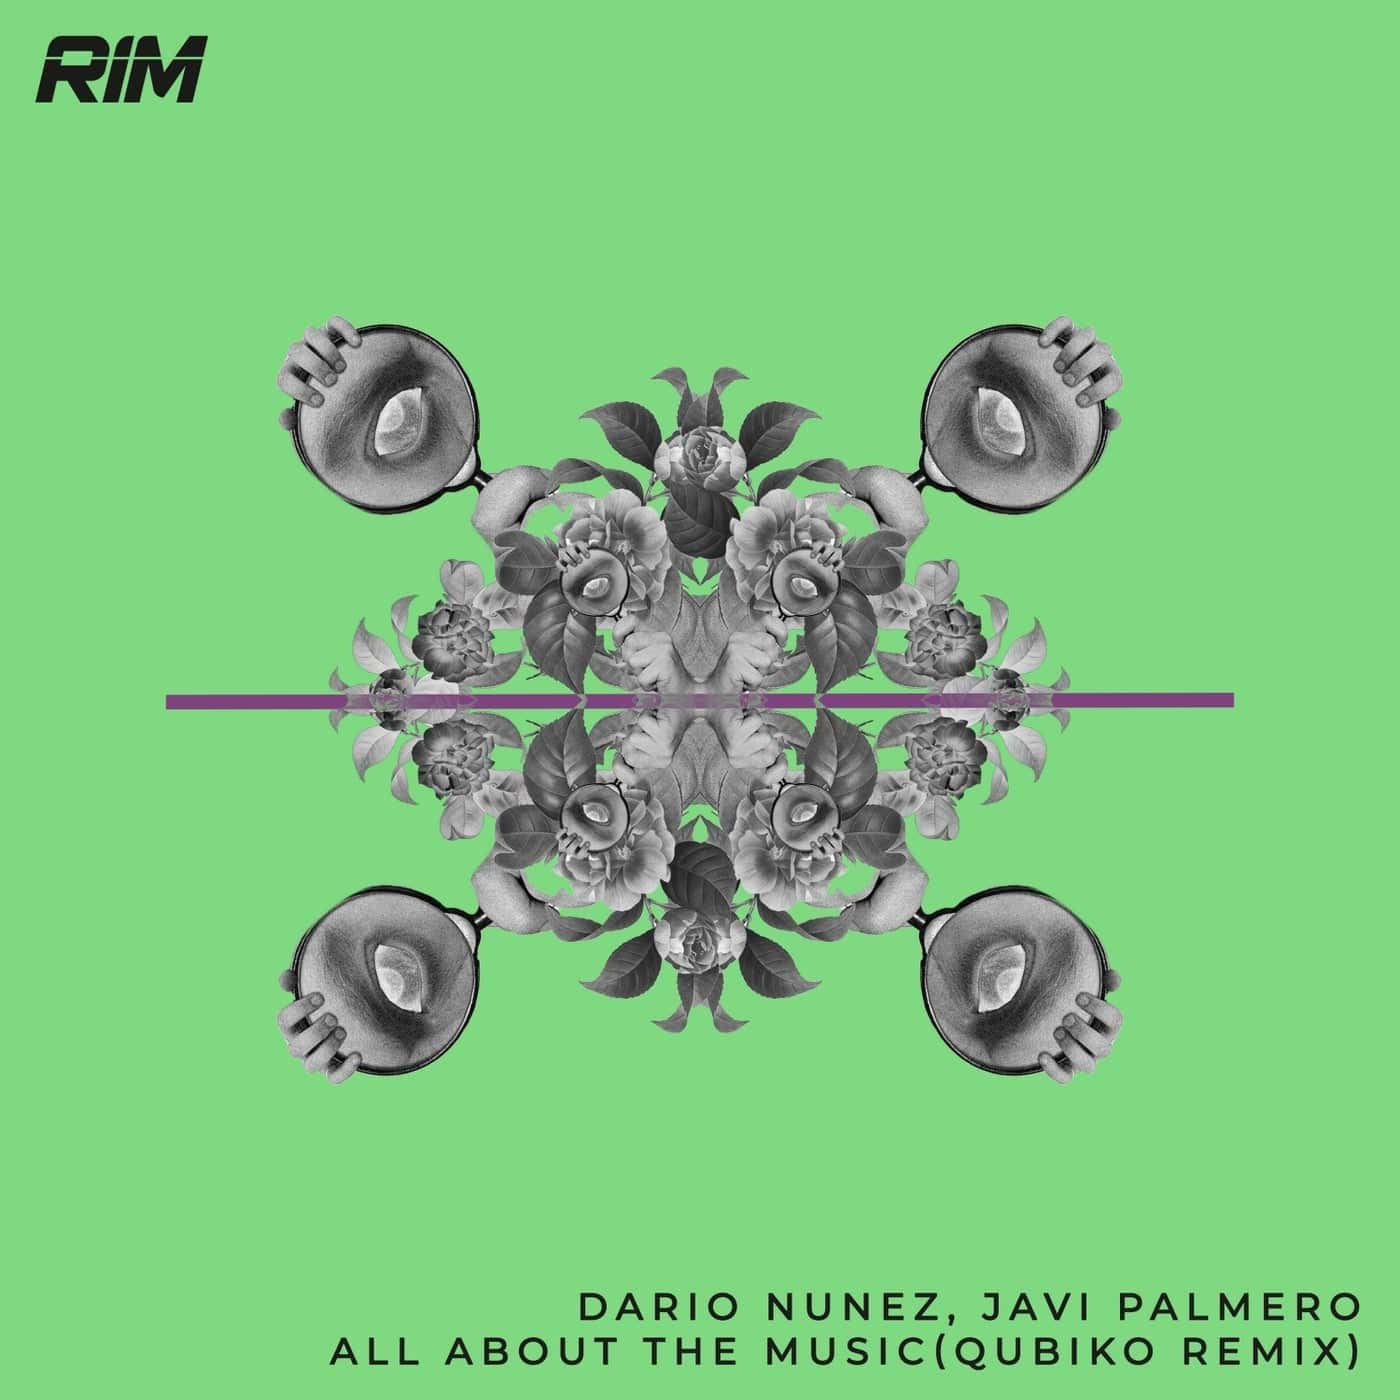 Download Dario Nunez, Javi Palmero - All About the Music (Qubiko Remix) on Electrobuzz